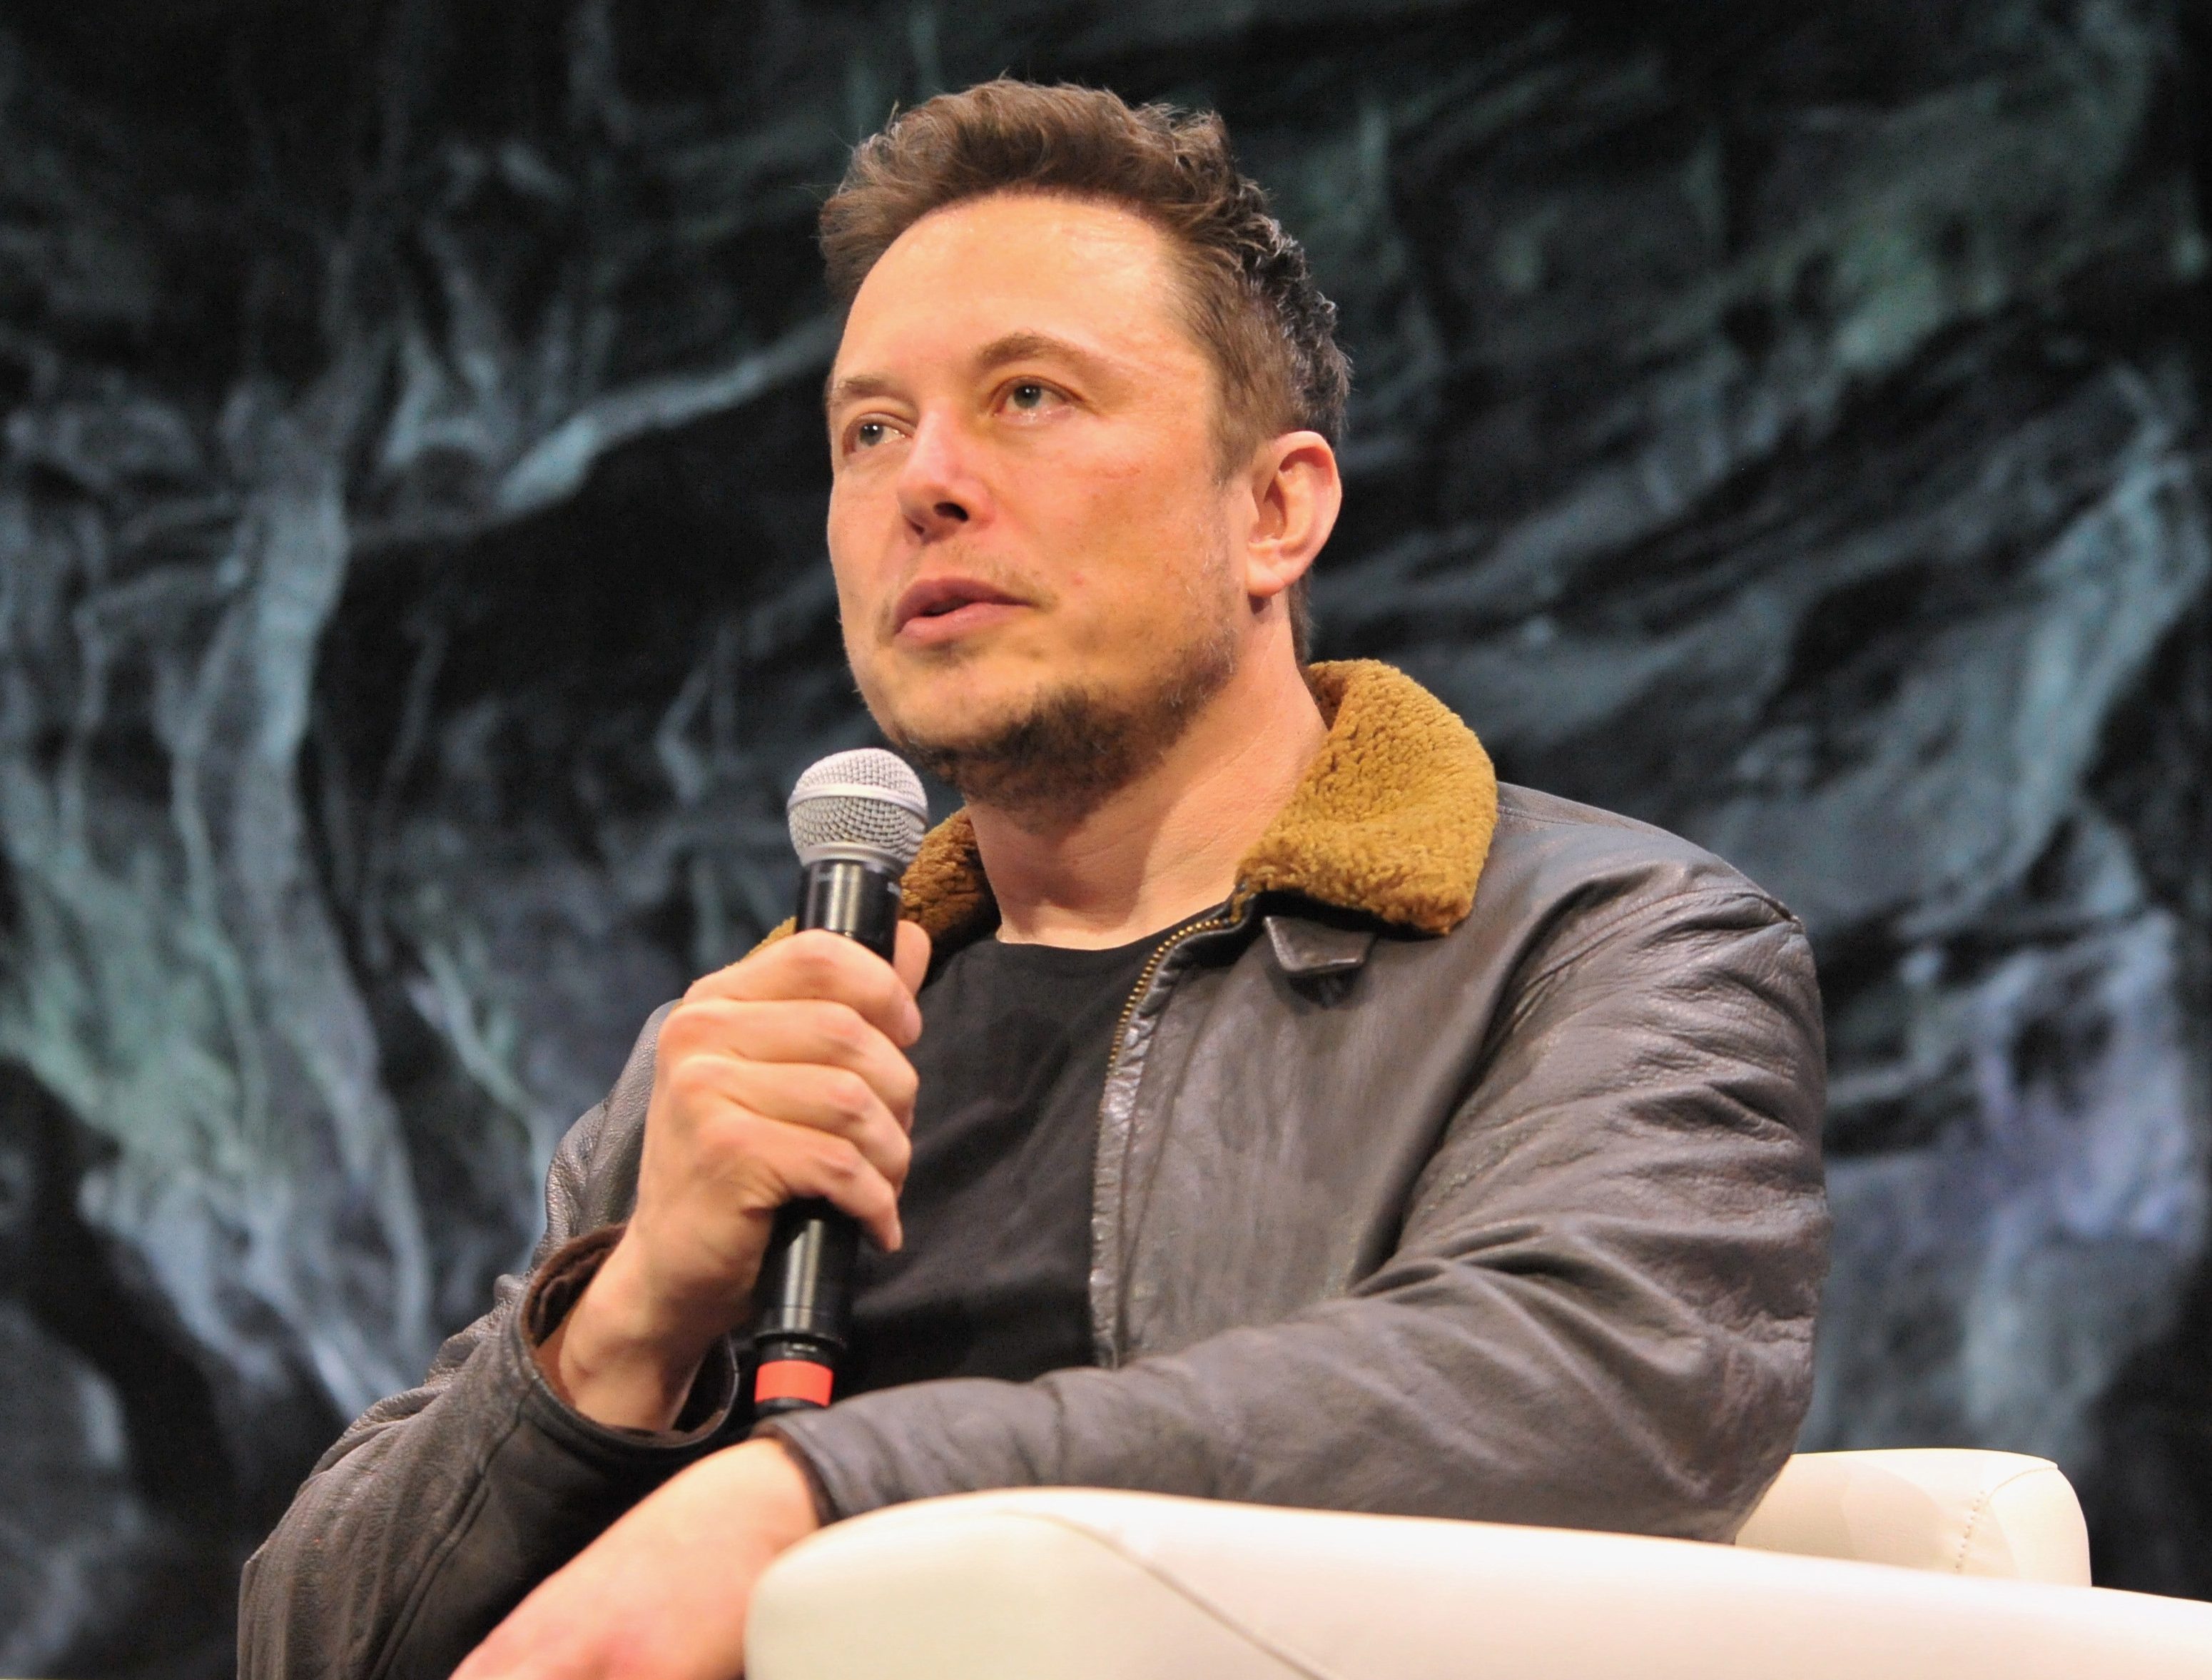   Ông chủ của SpaceX, Elon Musk, đã bị sa thải